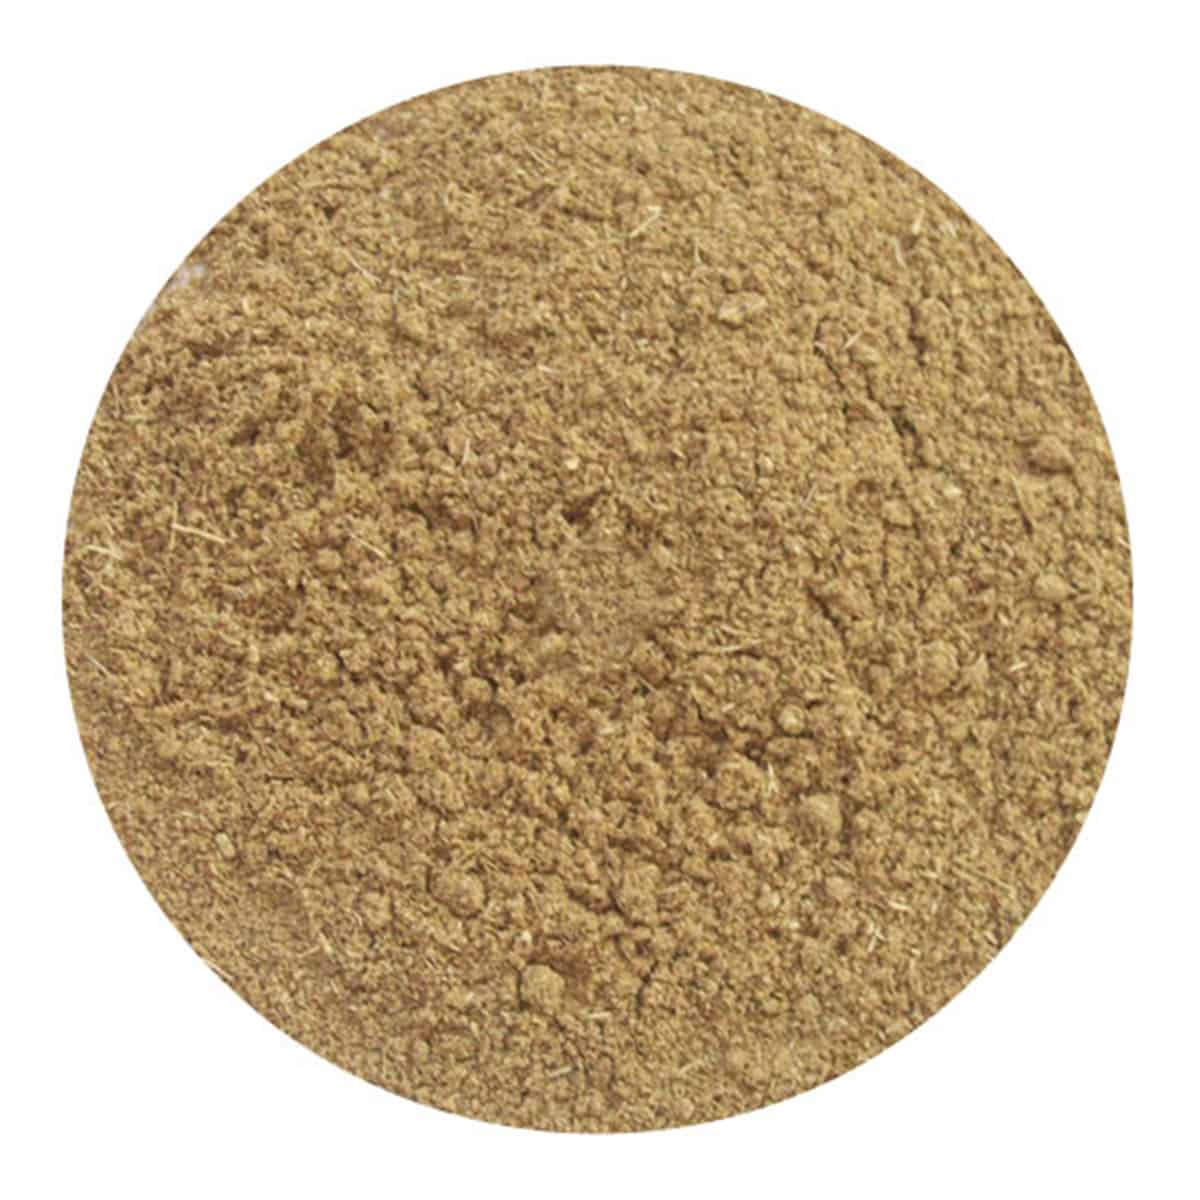 Buy IAG Foods Fennel Powder - 1 kg